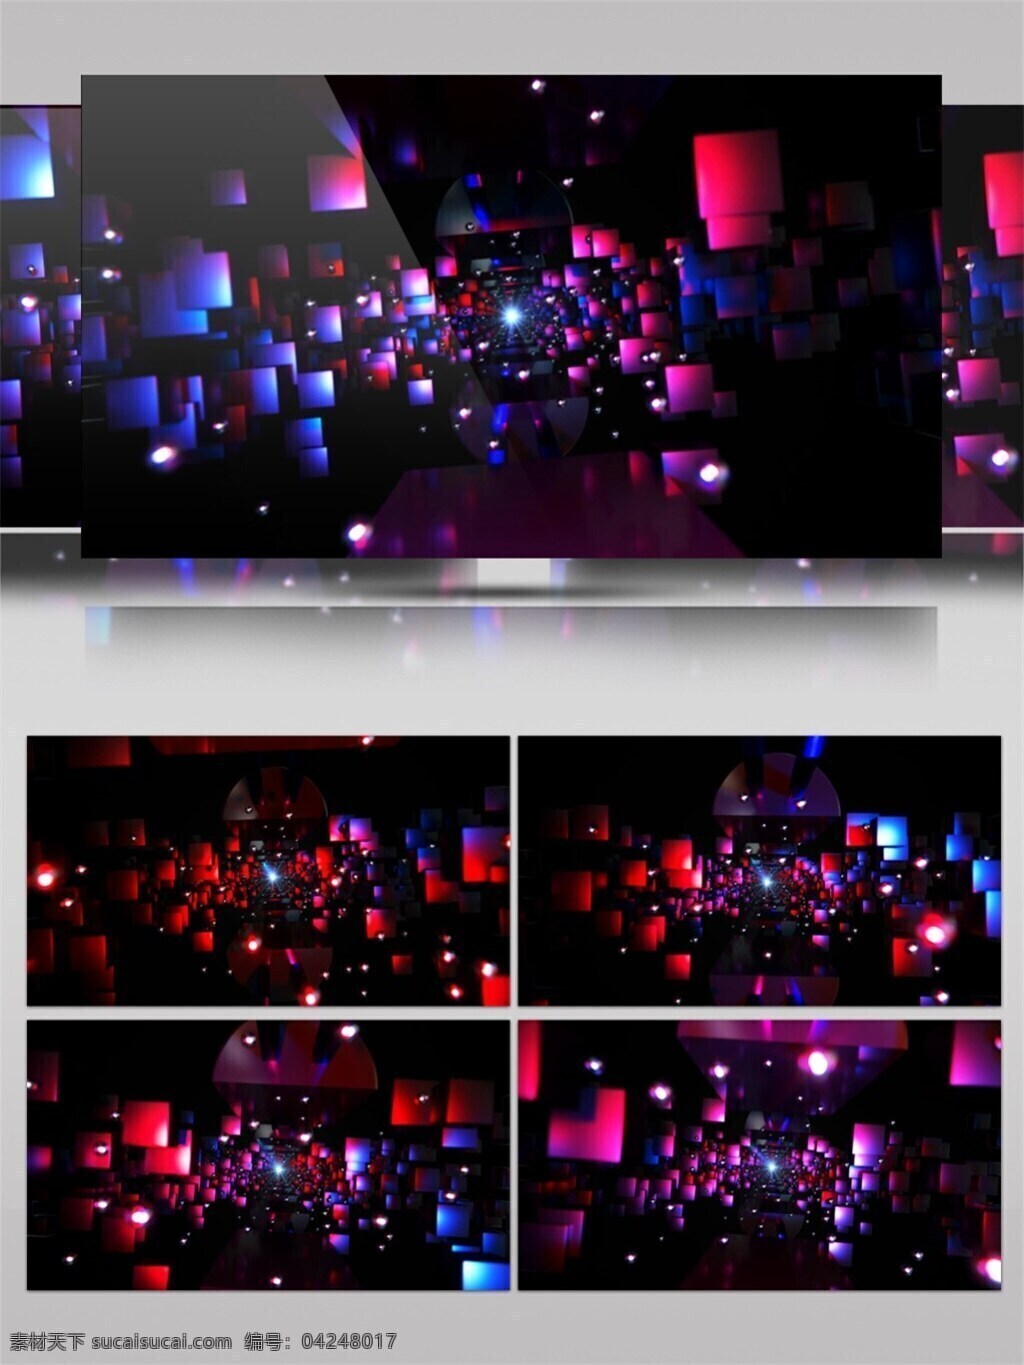 酒吧 夜 店 动态 视频 3d视频素材 高清视频素材 酒吧vj 朦胧灯光 特效视频素材